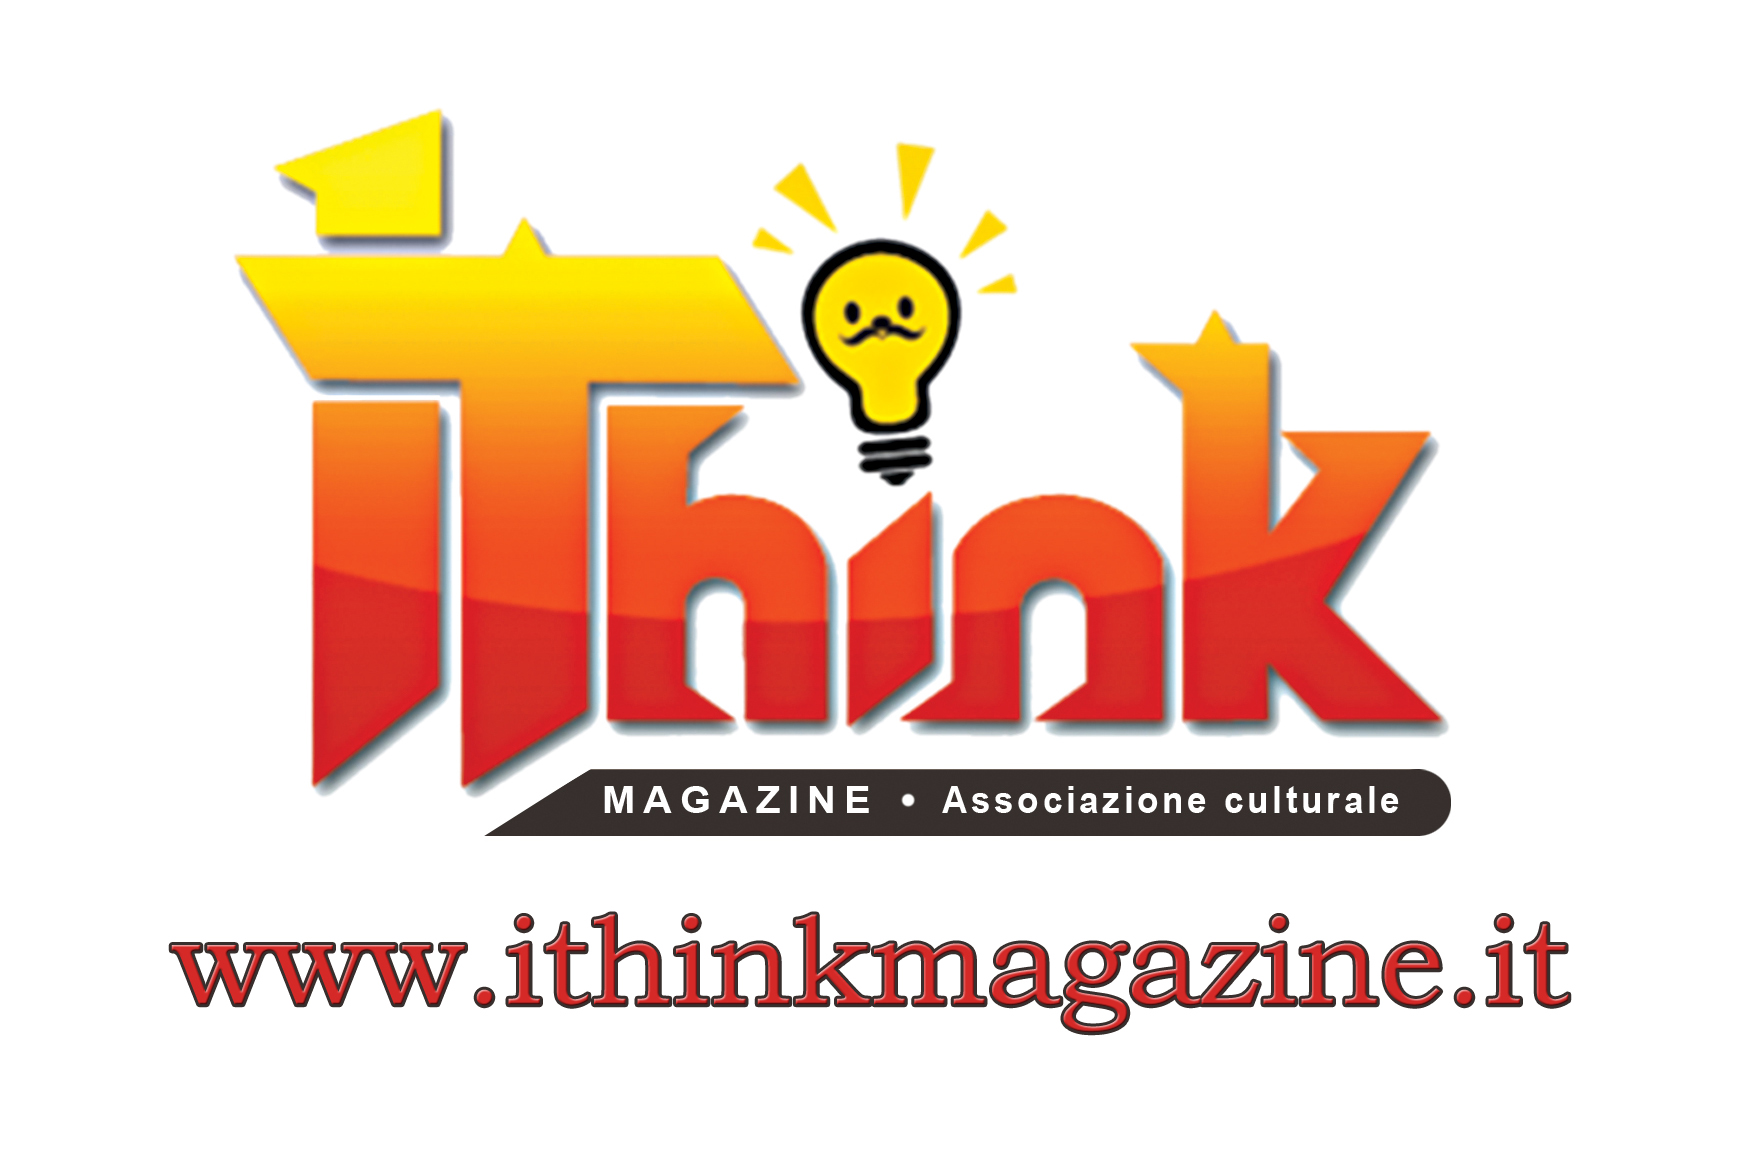 IThink magazine